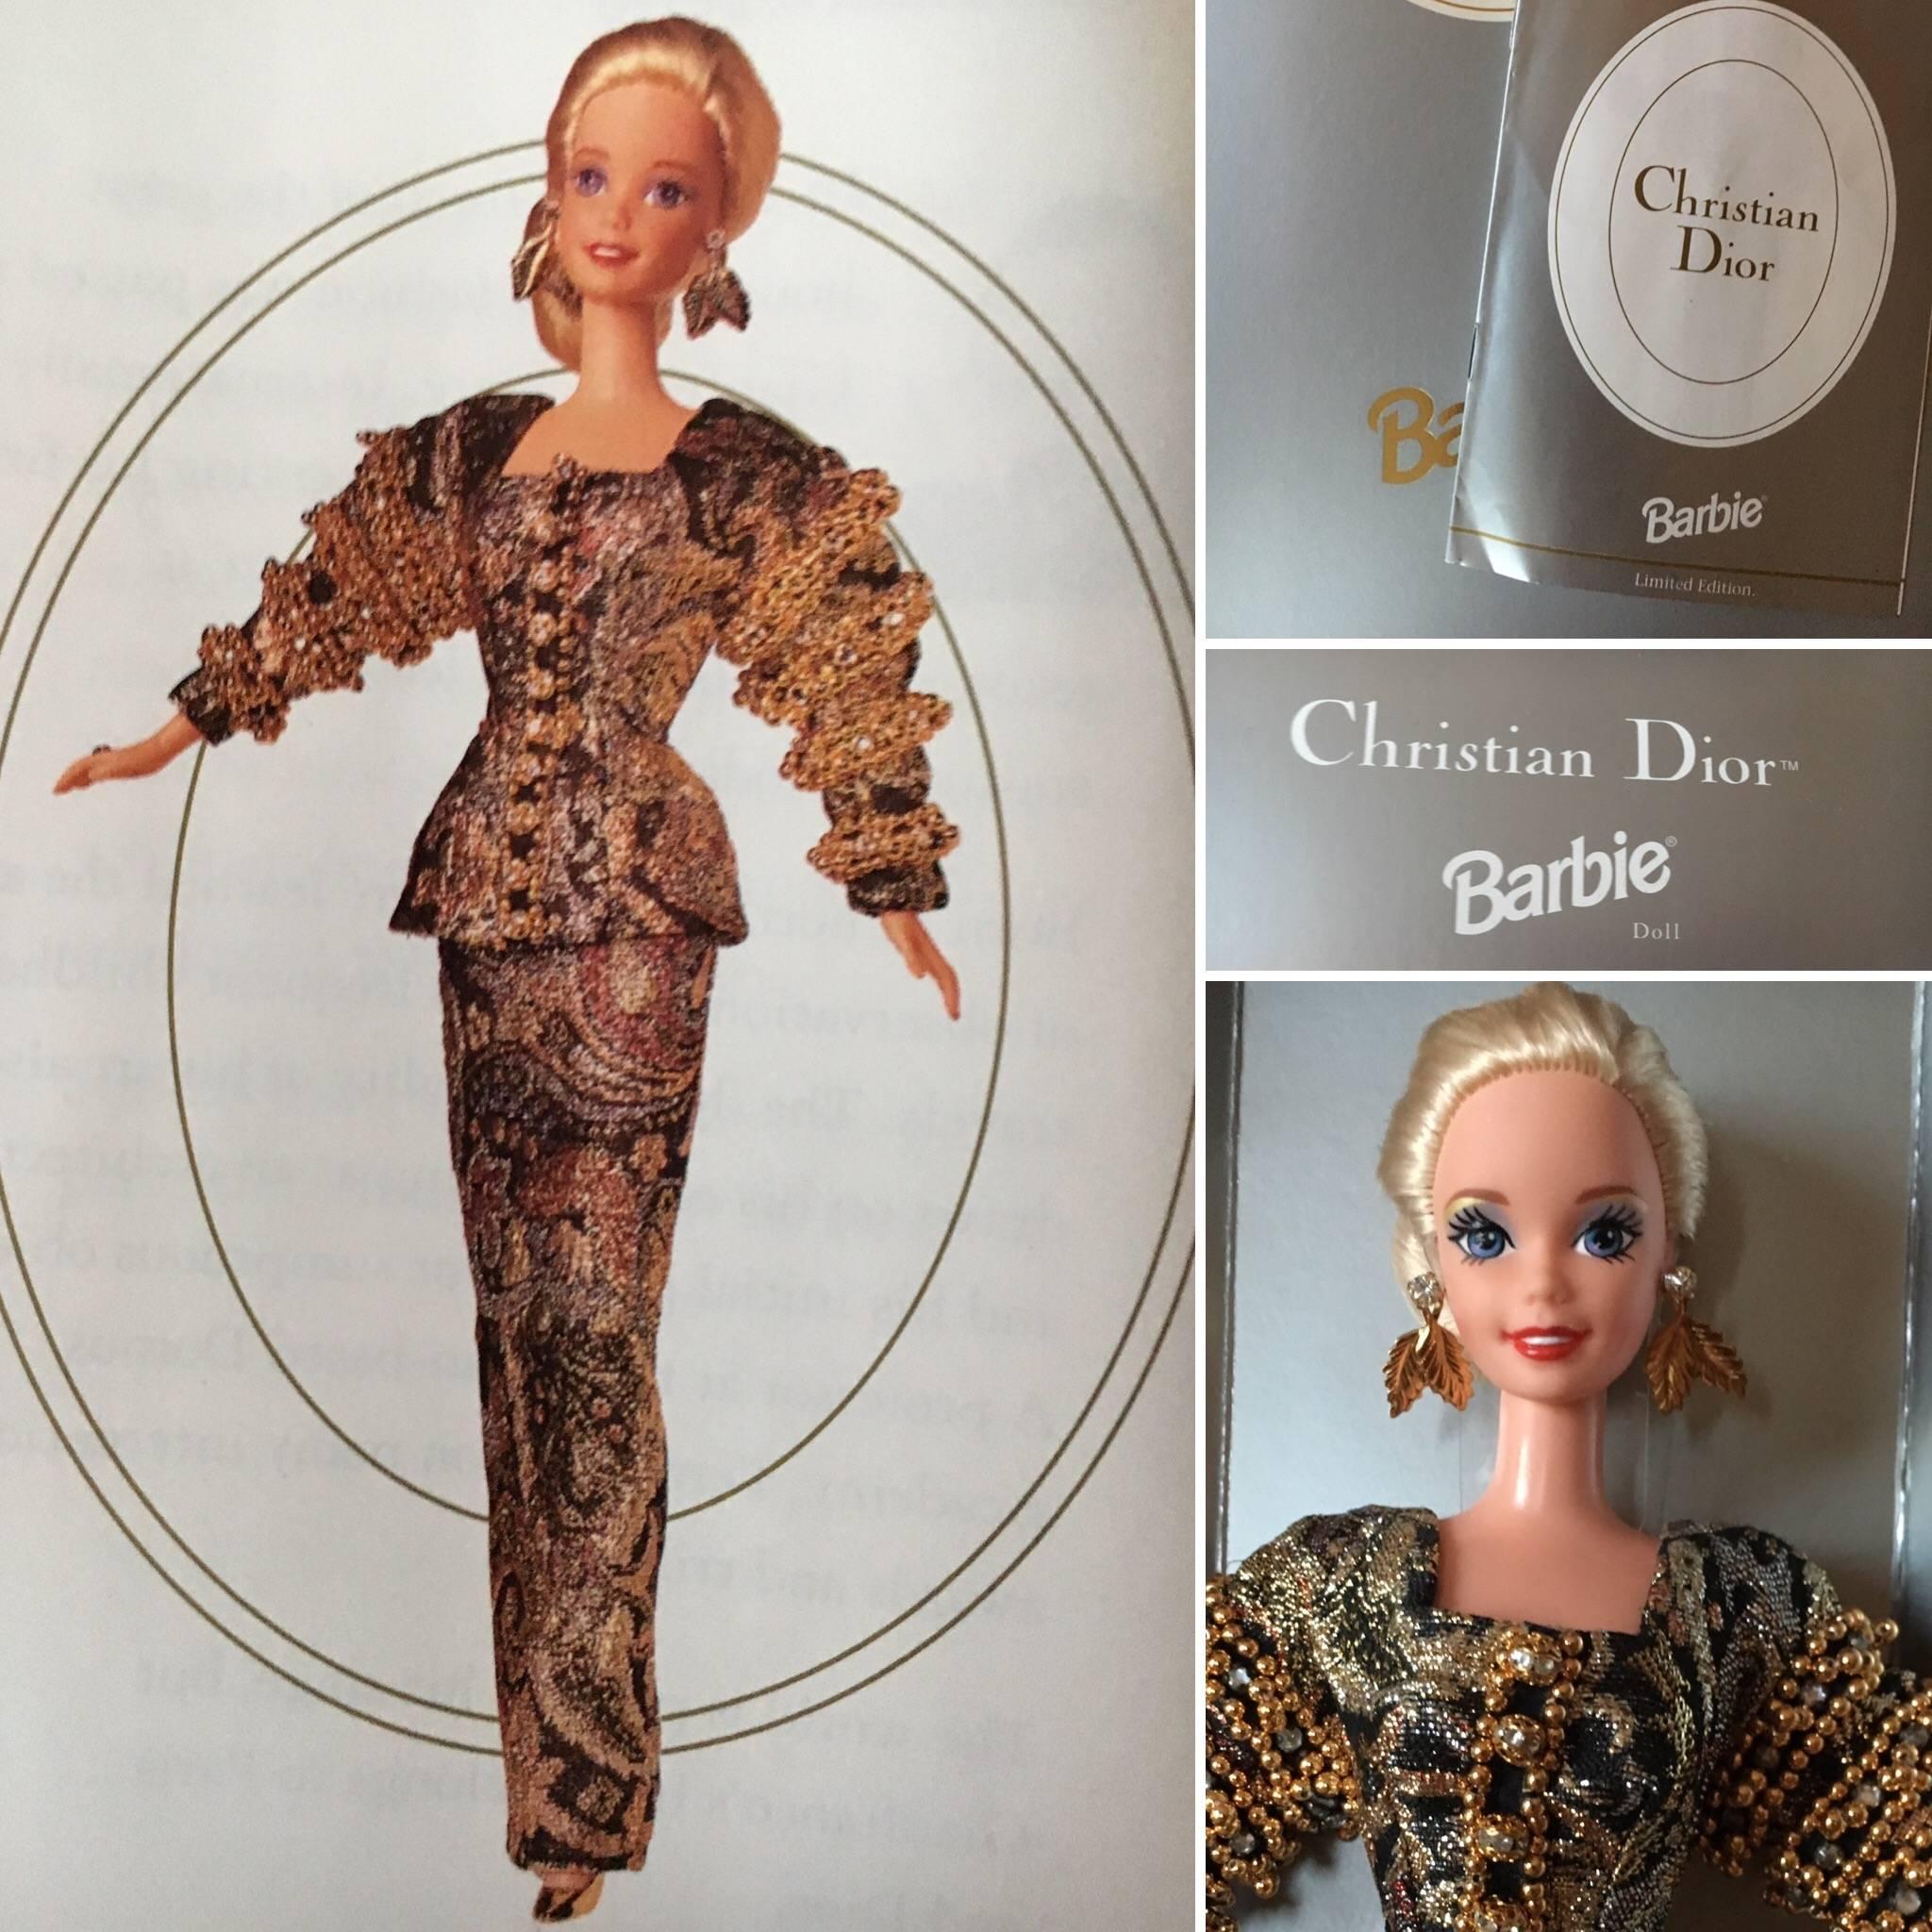 Christian Dior 1993 Haute Couture Barbie Doll by Gianfranco Ferre New in Box. 
Créé en collaboration avec Christian Dior :: ce modèle est une réplique d'une robe Dior Haute Couture de Gianfranco Ferre. 
Si chic avec ses cheveux en chignon:: Barbie